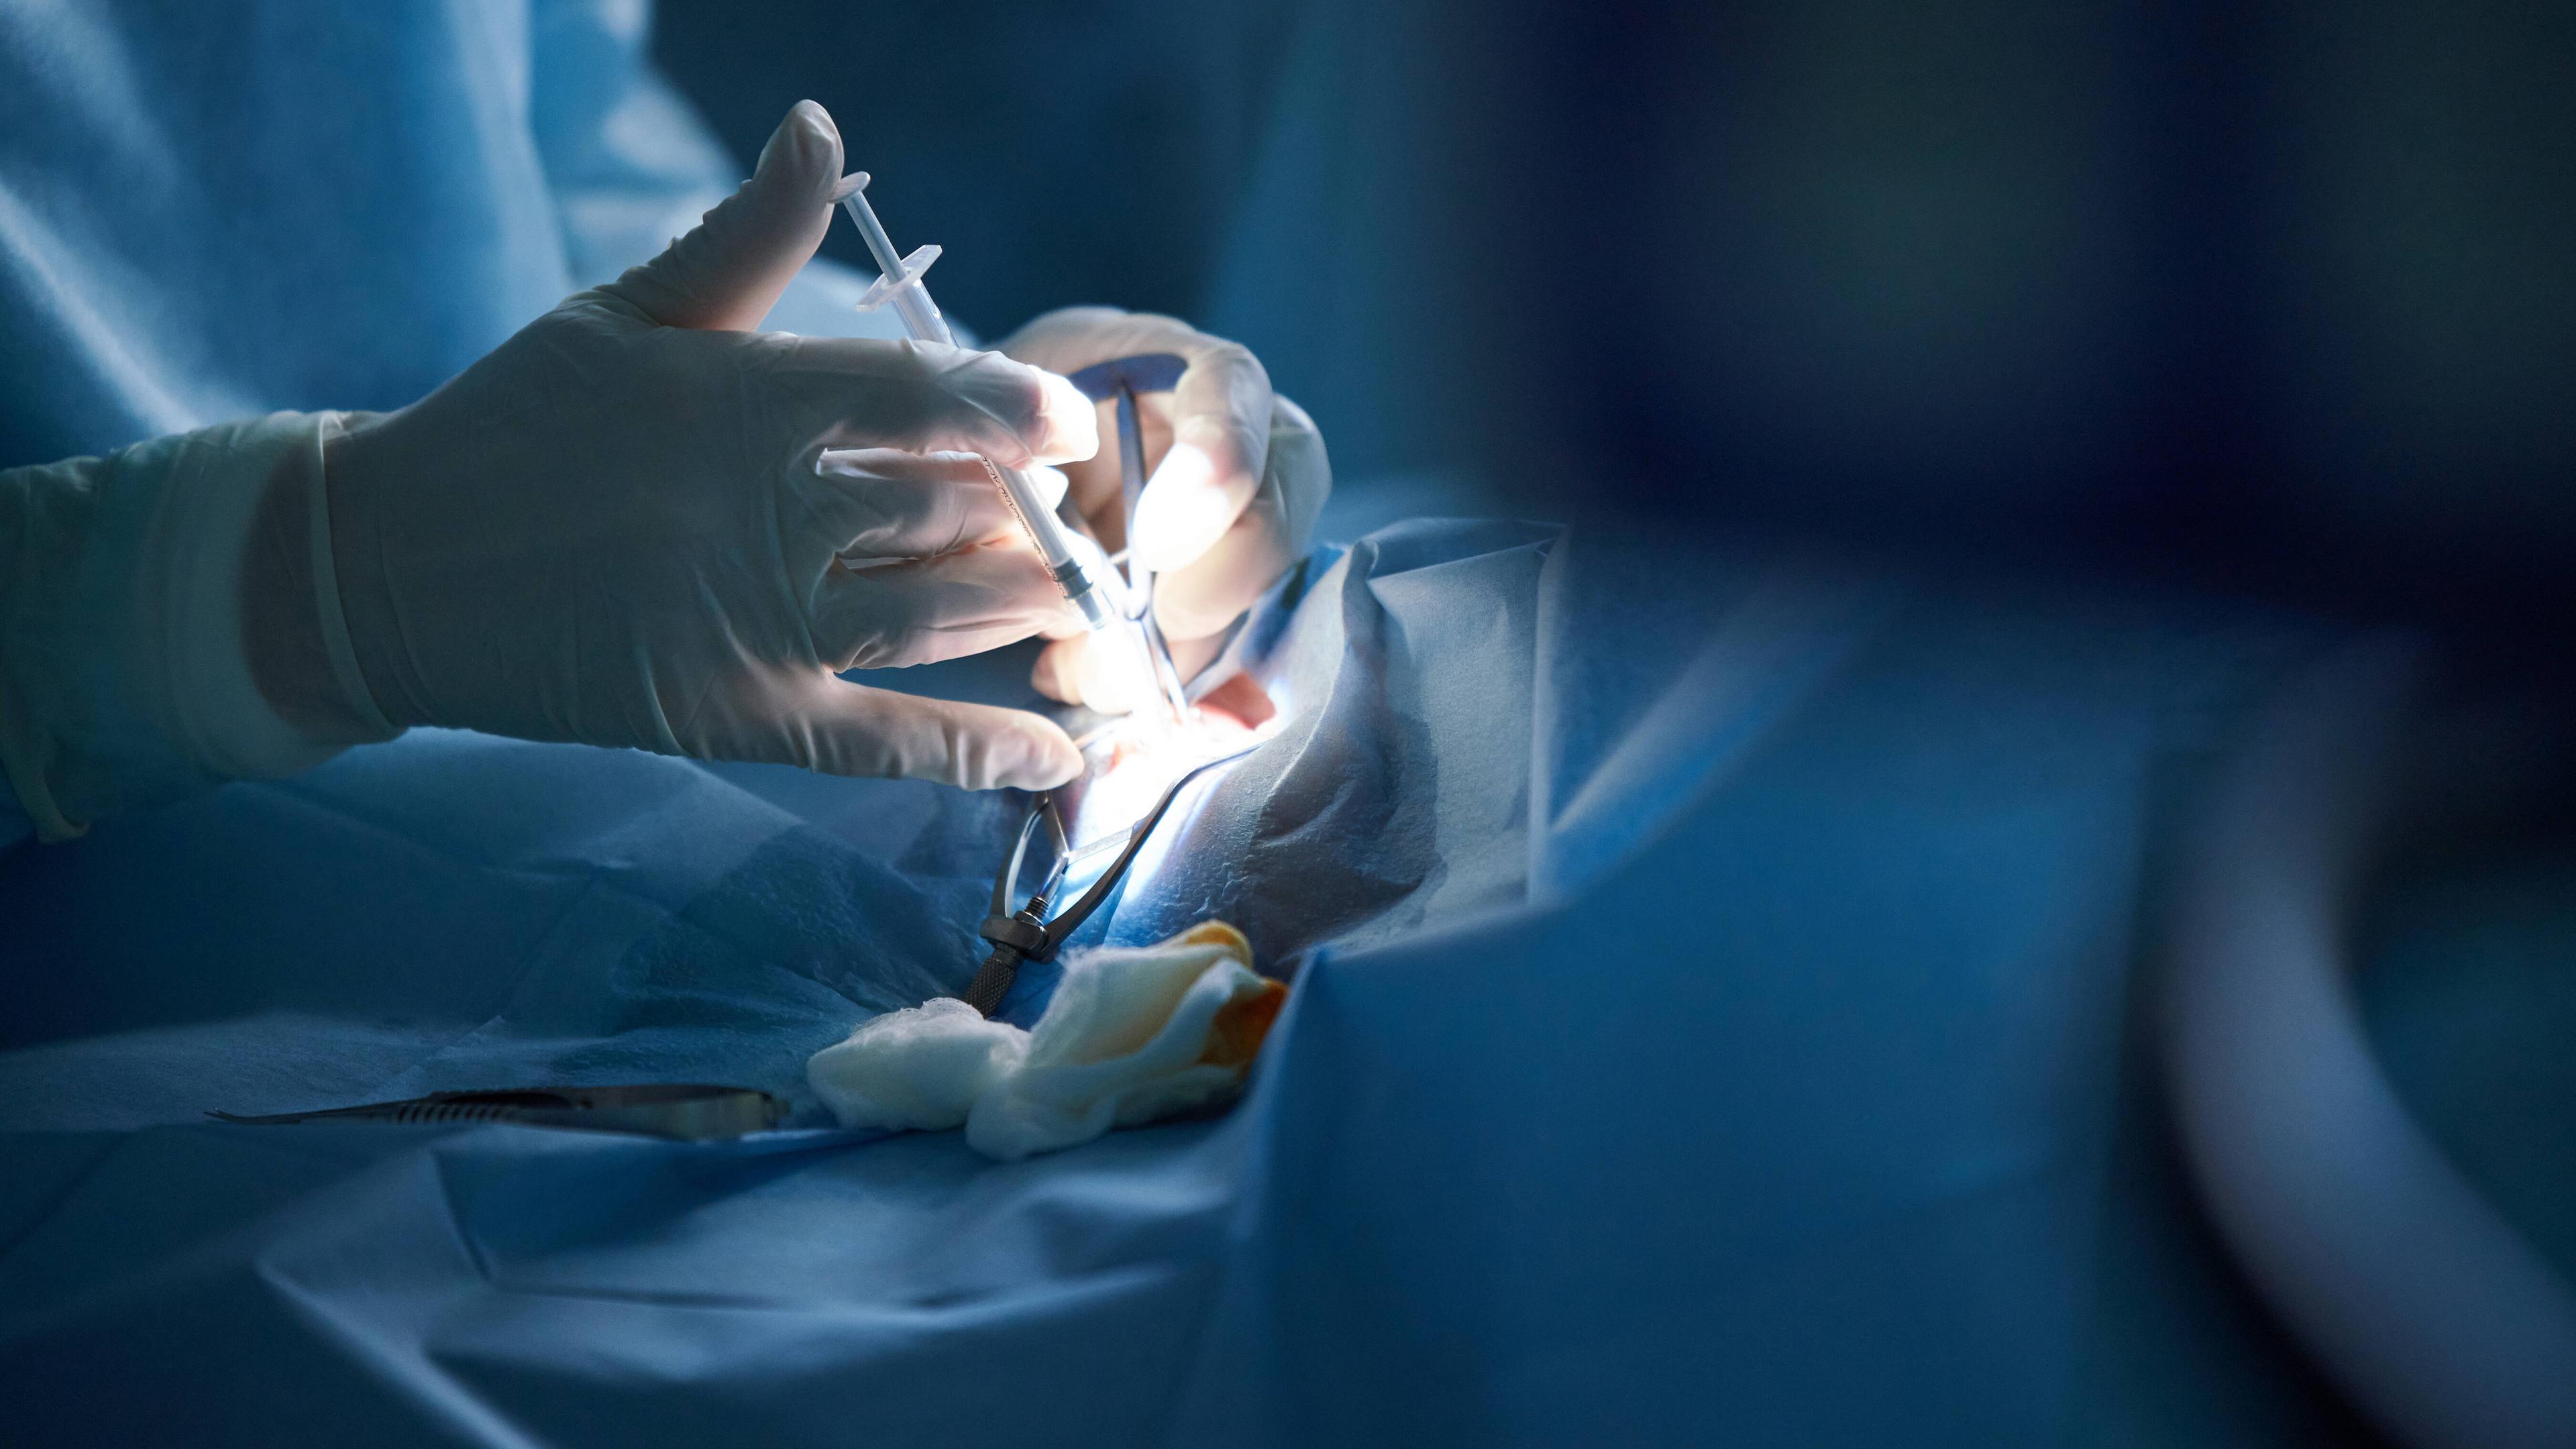 Archiv: Chirurgen während einer Operation (Symbolfoto)